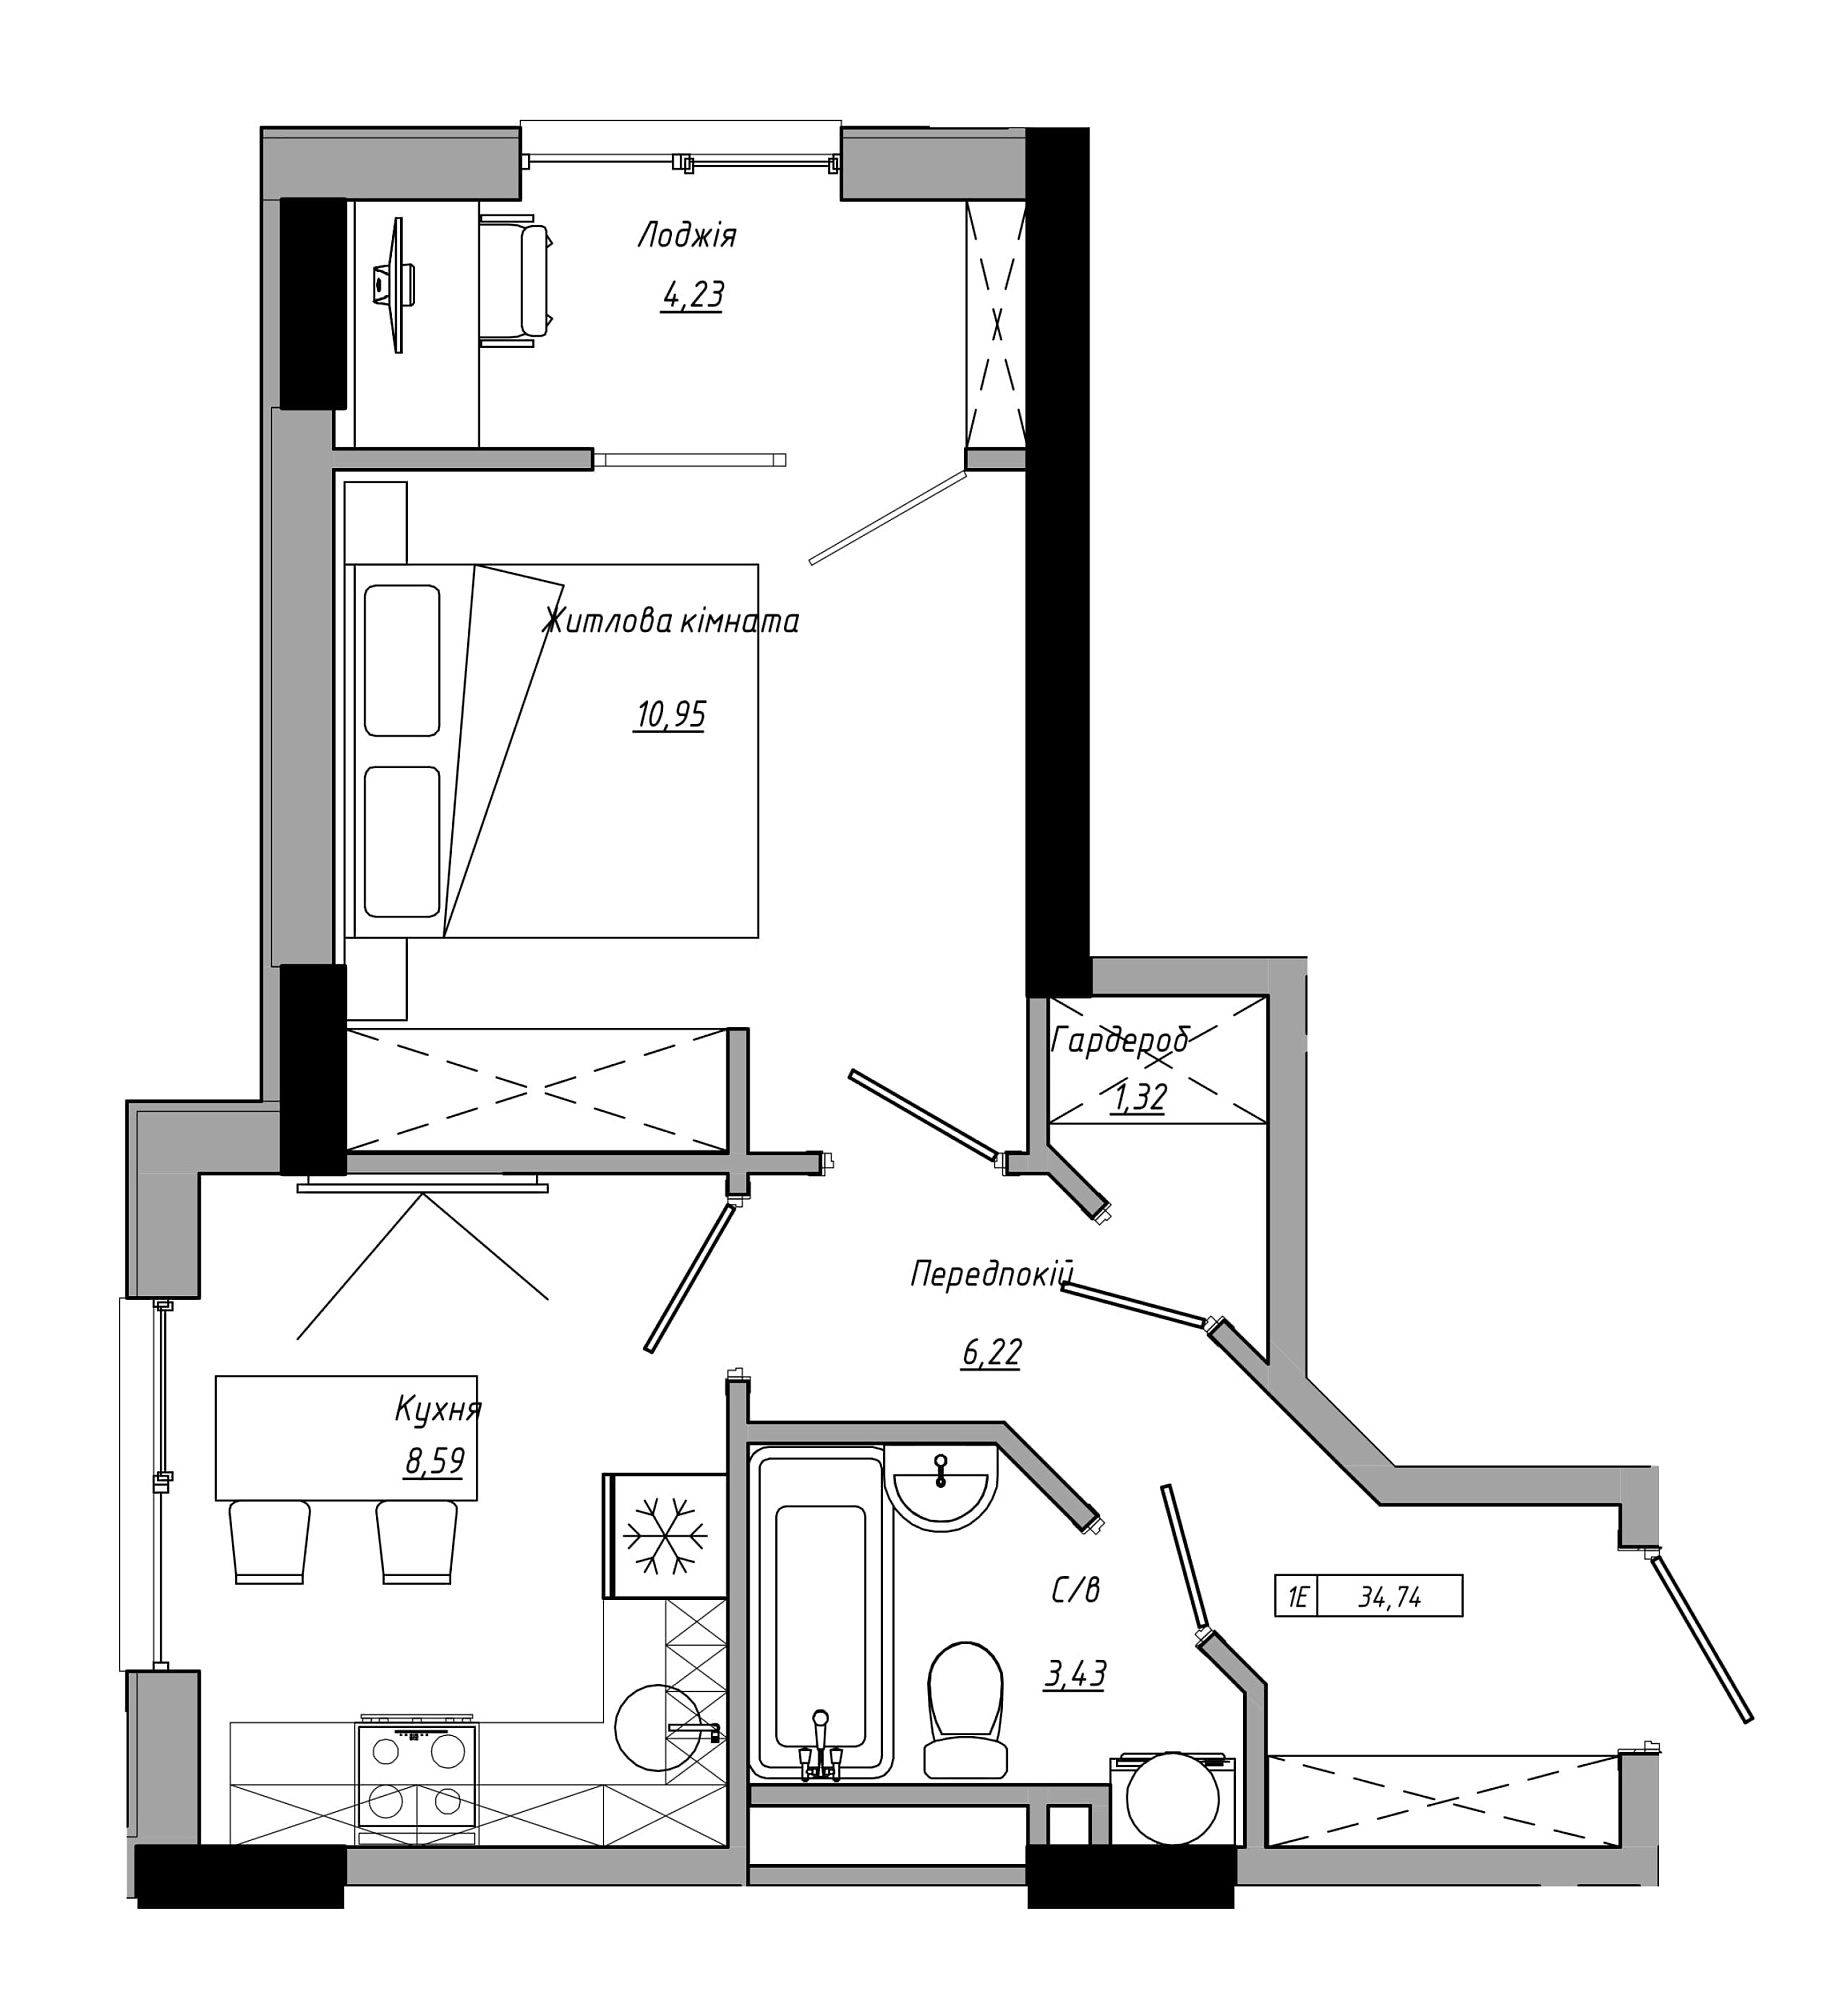 Планировка 1-к квартира площей 34.74м2, AB-21-11/00009.